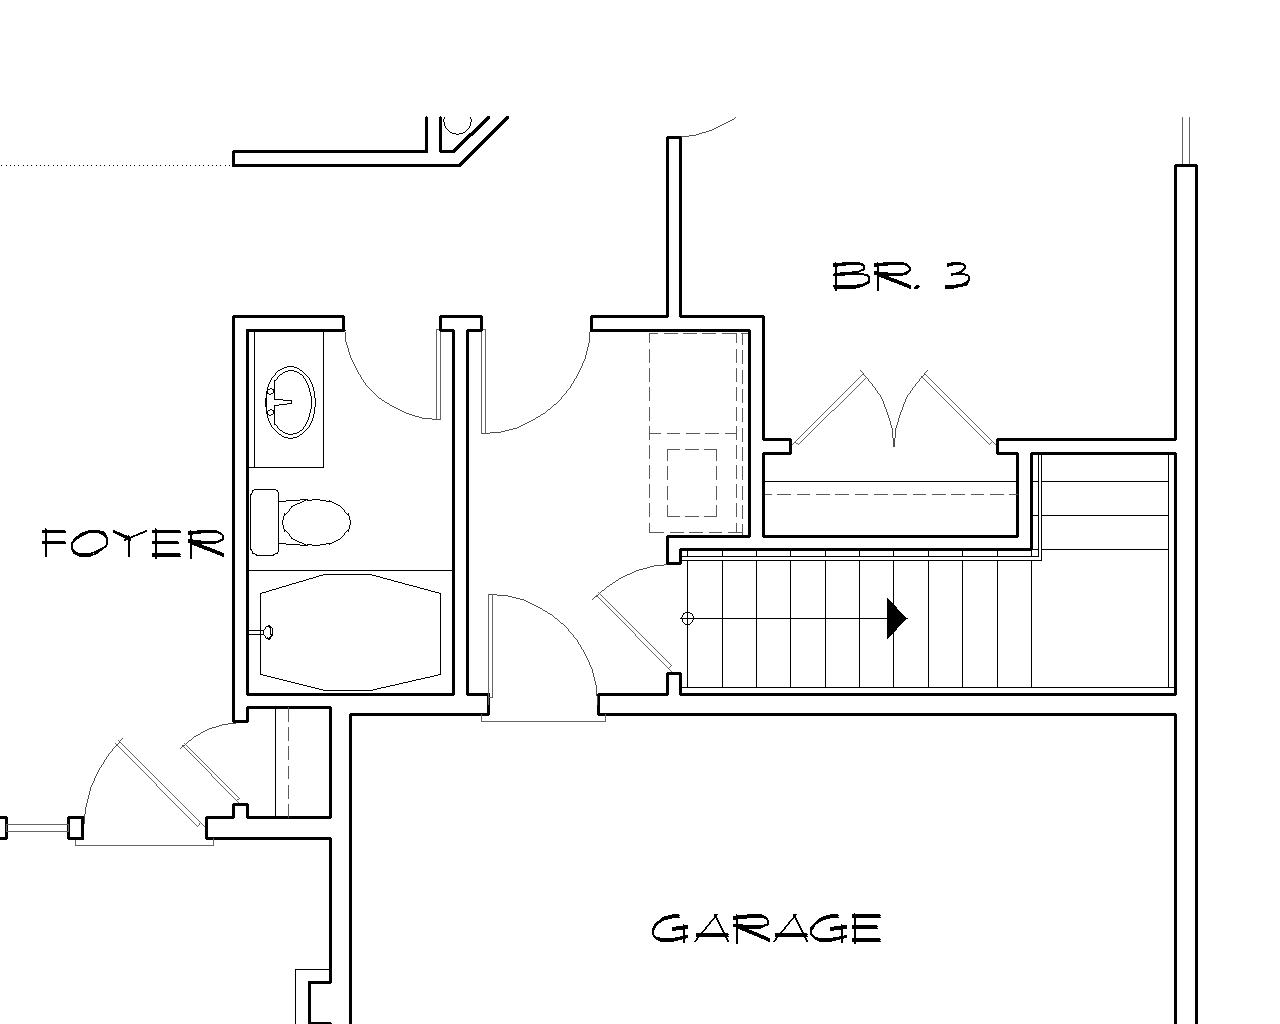 Stair Location for Basement Version image of Hooksett House Plan